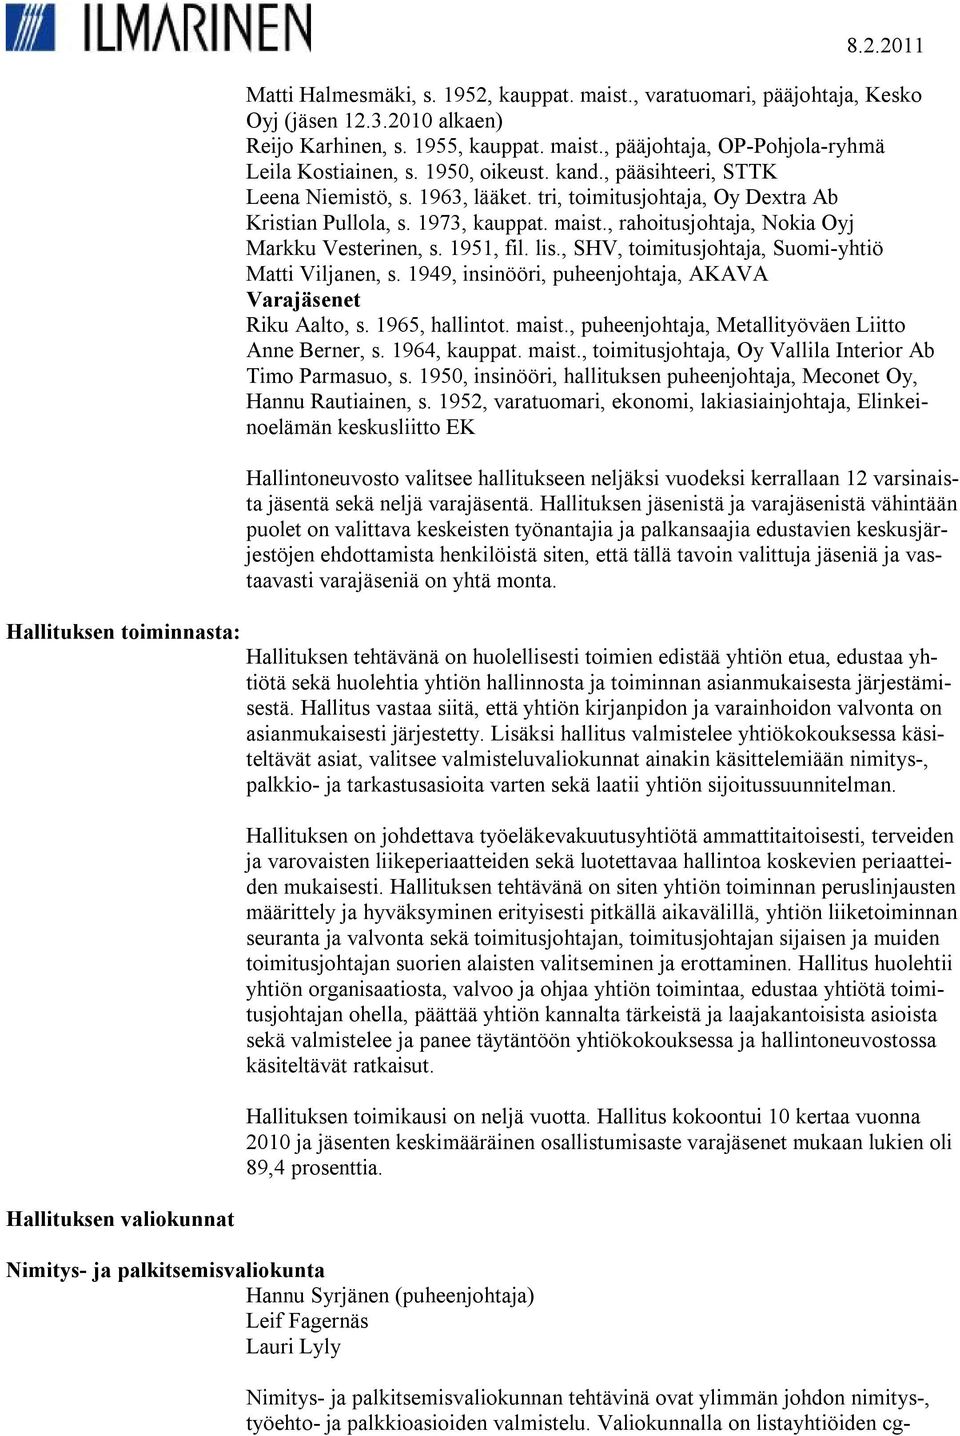 1973, kauppat. maist., rahoitusjohtaja, Nokia Oyj Markku Vesterinen, s. 1951, fil. lis., SHV, toimitusjohtaja, Suomi-yhtiö Matti Viljanen, s.